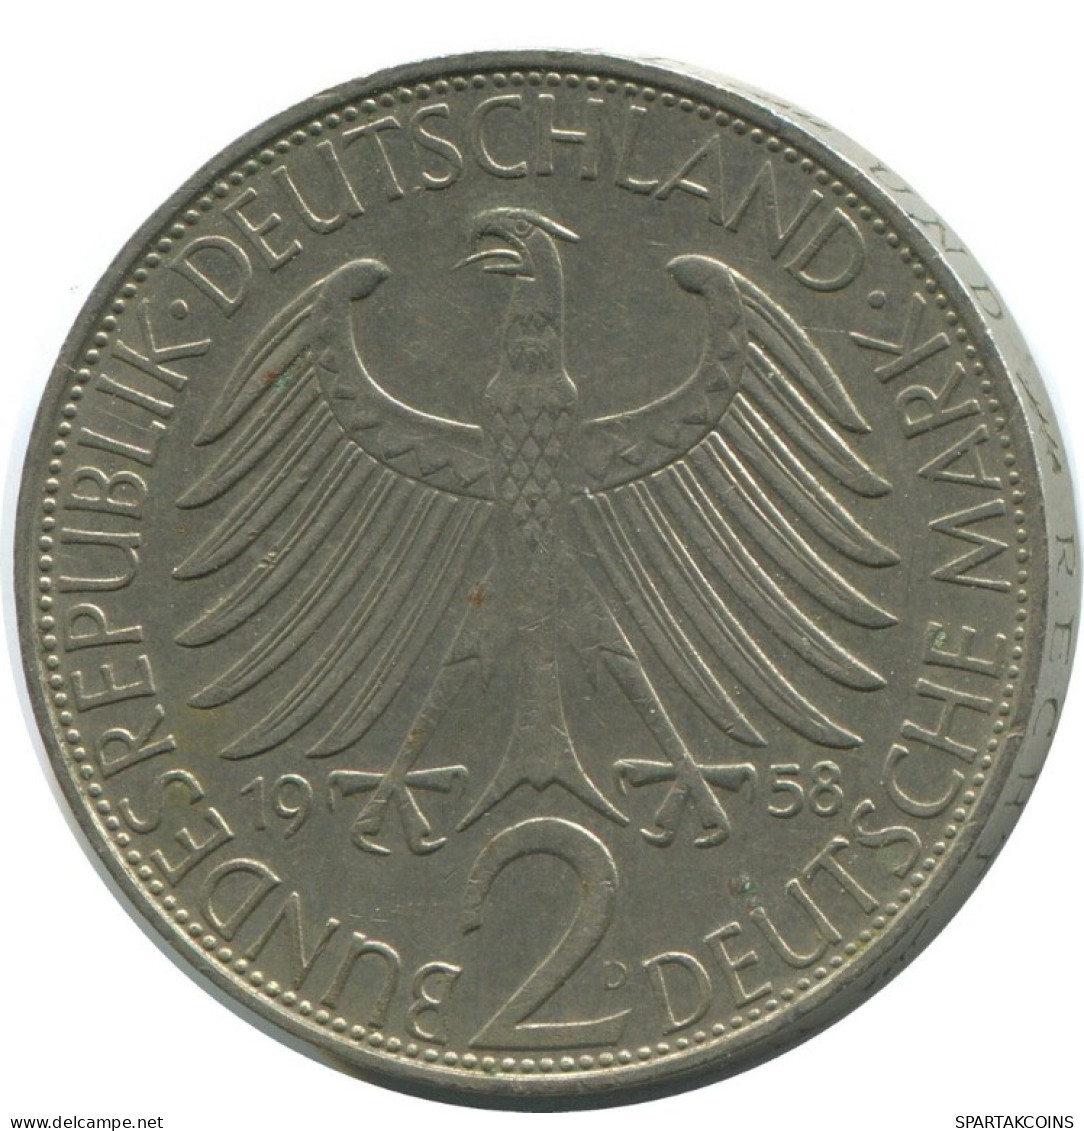 2 DM 1958 D M.PLANCK BRD ALEMANIA Moneda GERMANY #AD767.9.E.A - 2 Mark